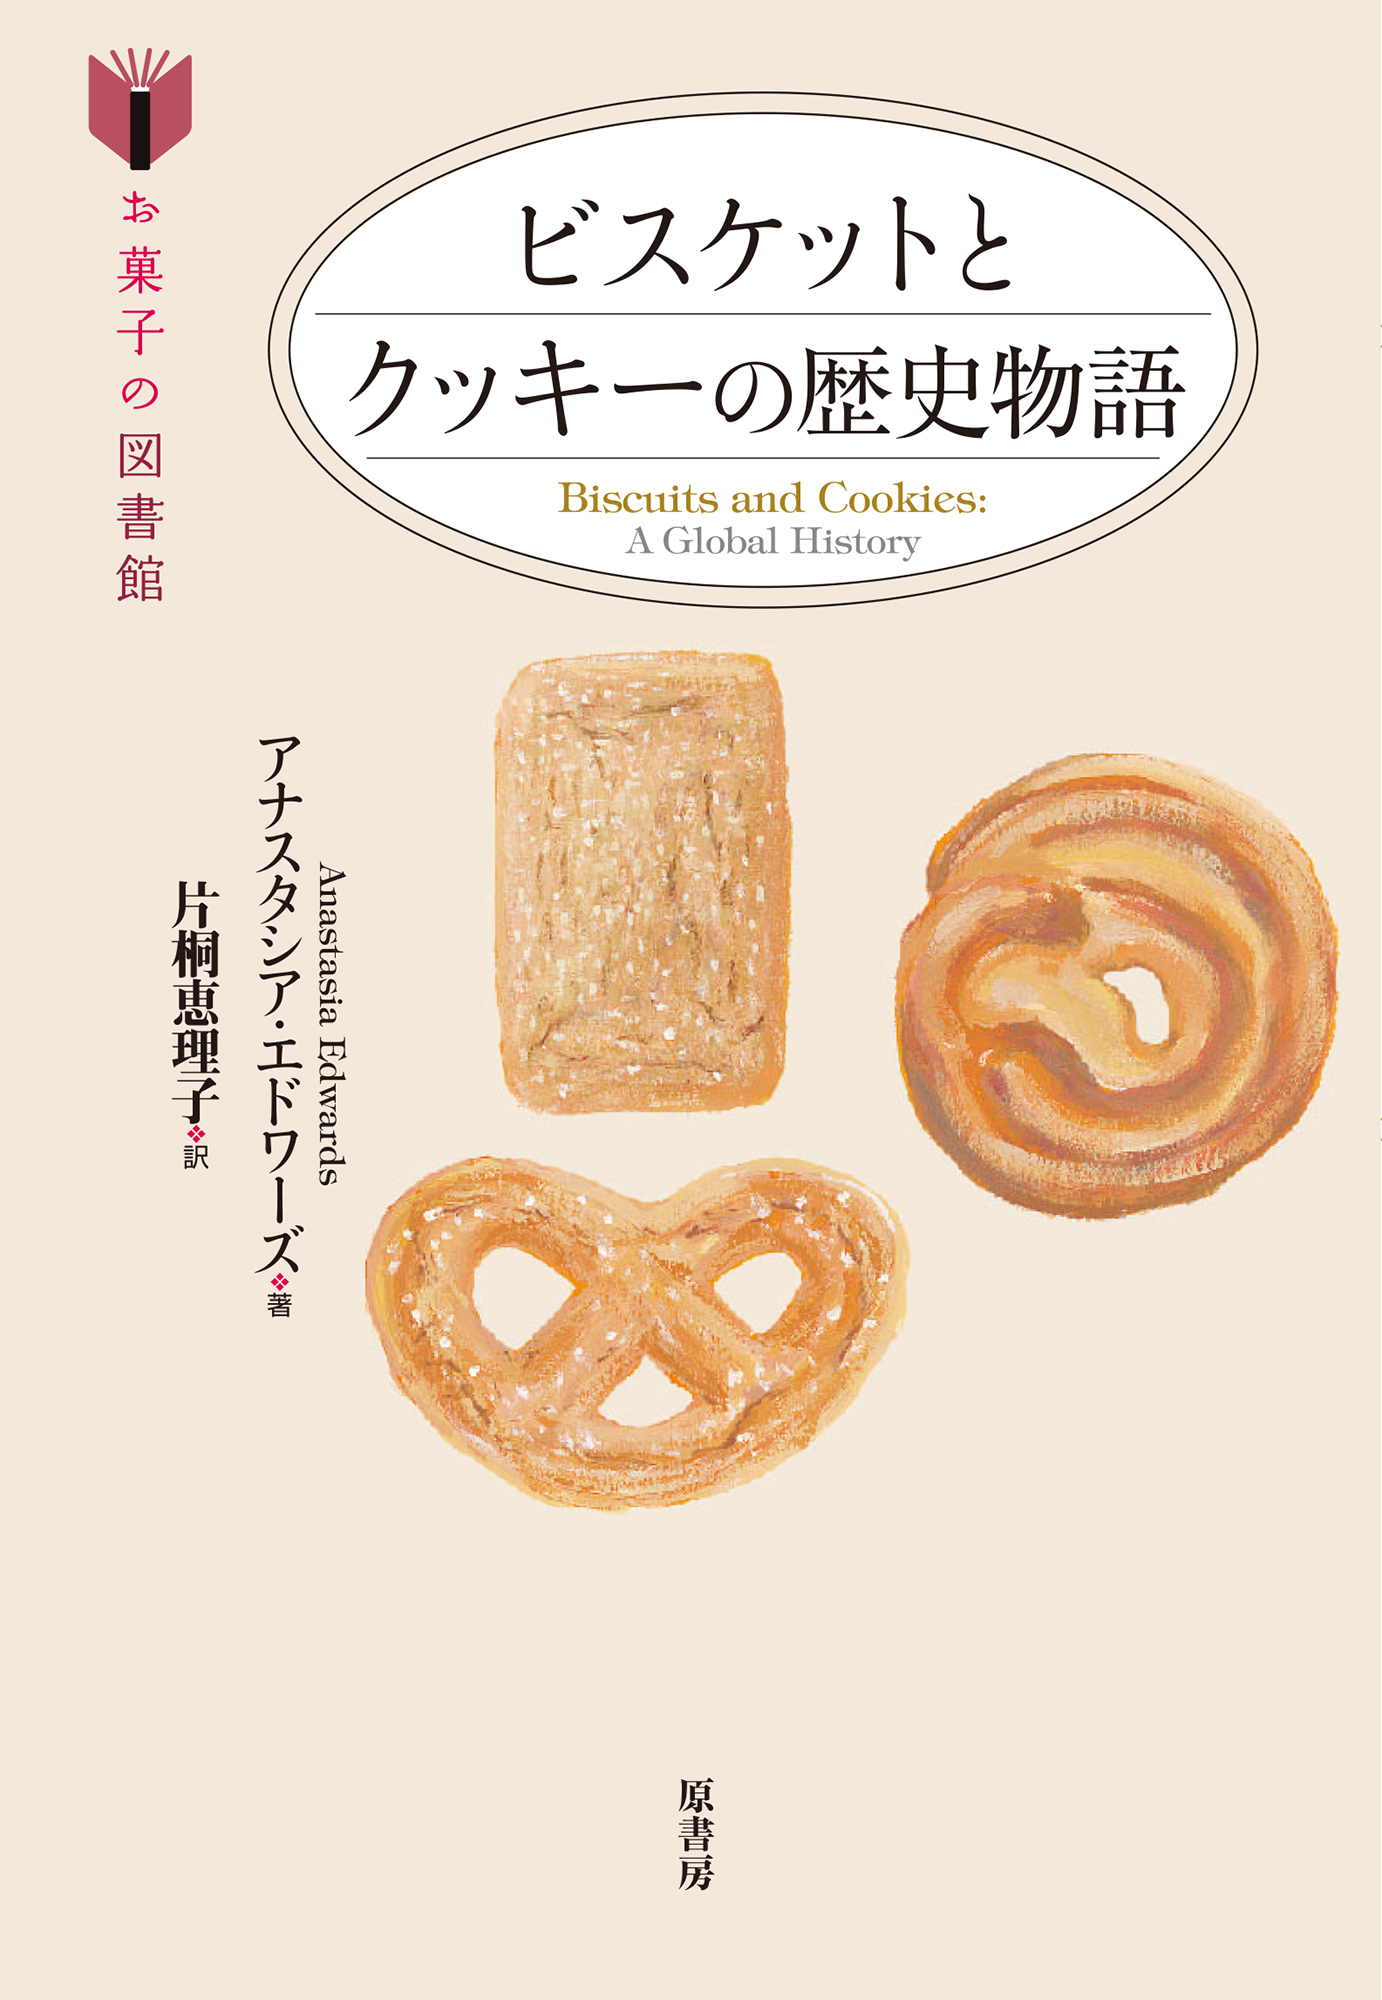 ビスケットとクッキーの歴史物語の商品画像